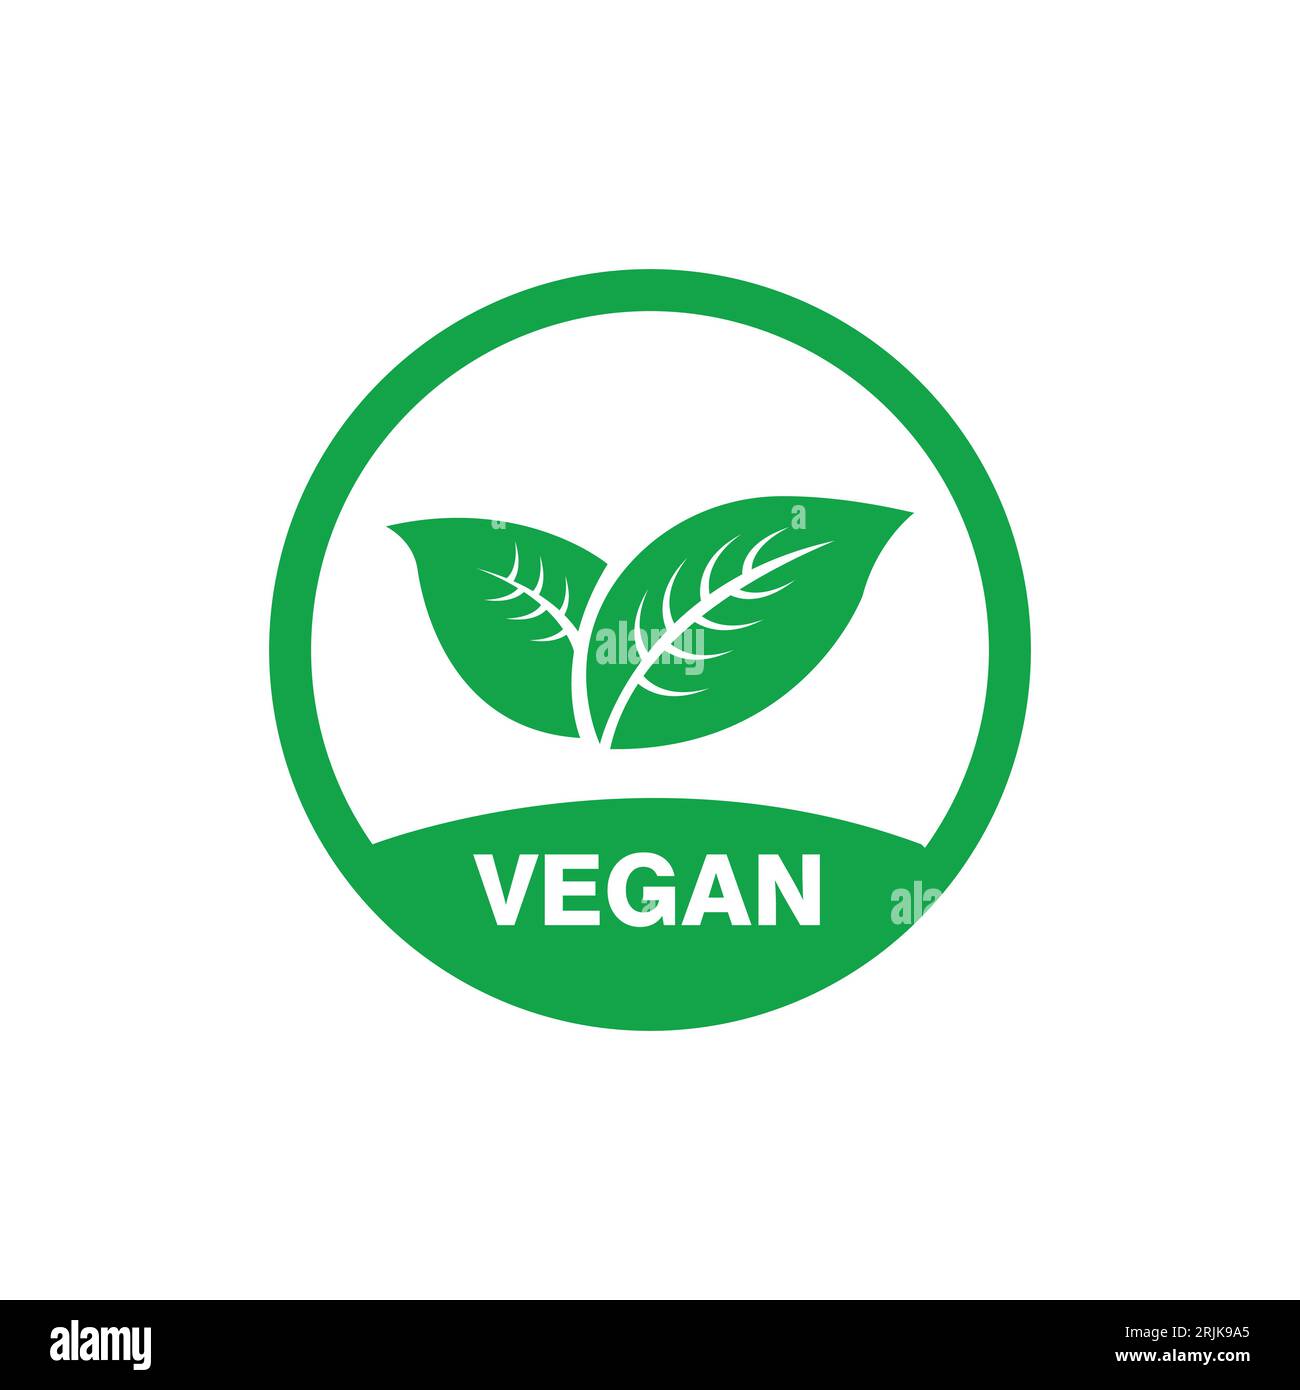 Veganer Ikonenvektor. Bio-, Bio-, Öko-Symbol. Vegan, ohne Fleisch, laktosefrei, gesund, frisch und gewaltfrei. Grüne runde Vektorillustration mit l Stock Vektor